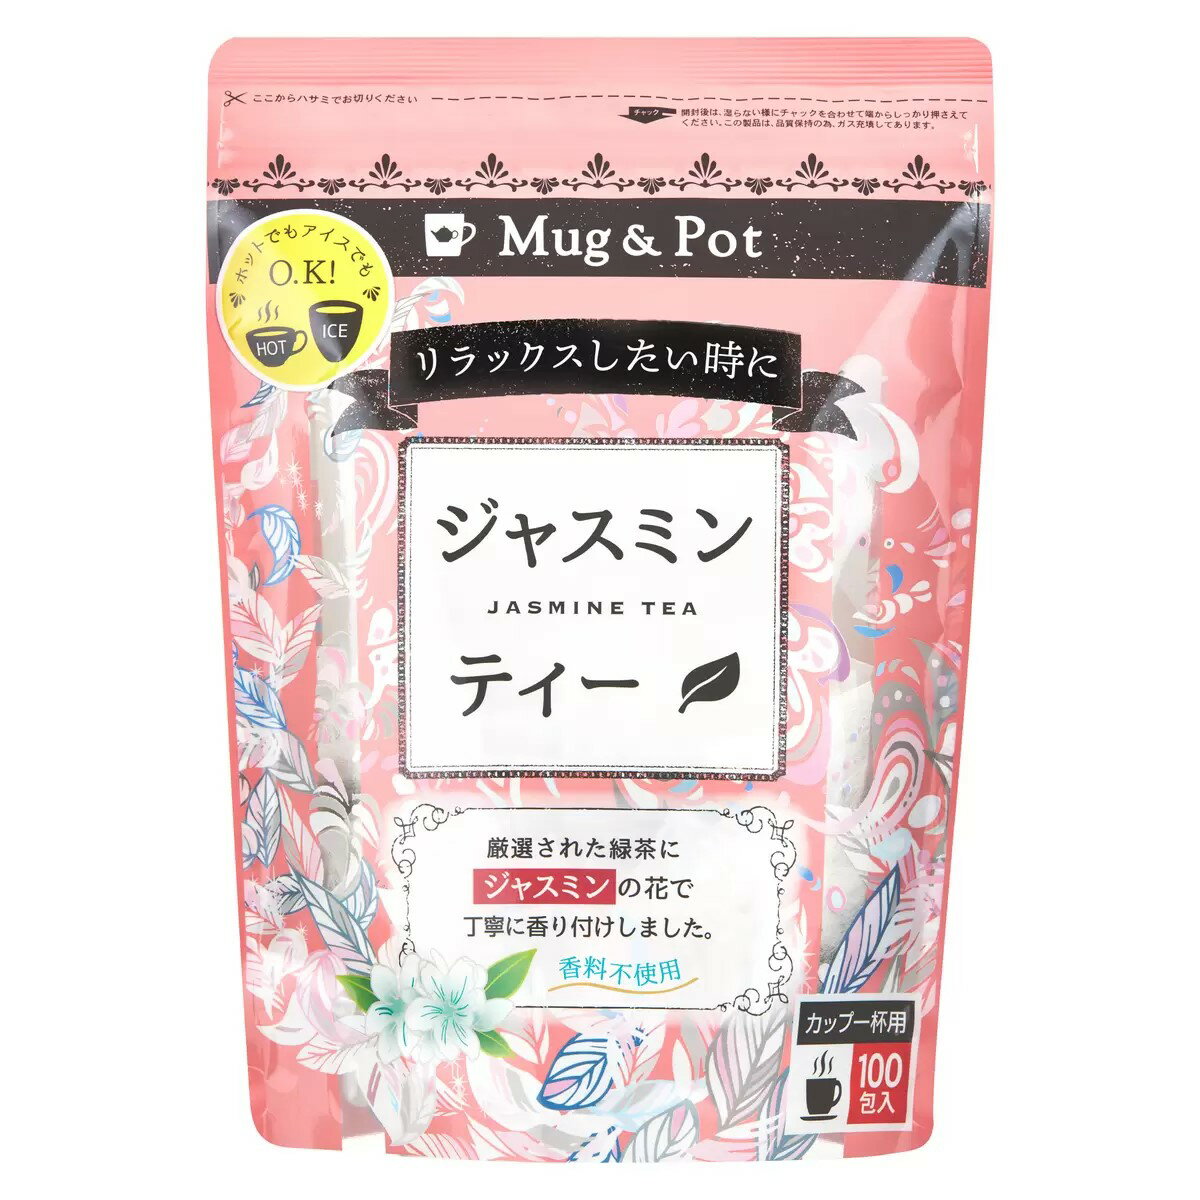 Mug & Pot ジャスミン茶 1.5g×100包 送料